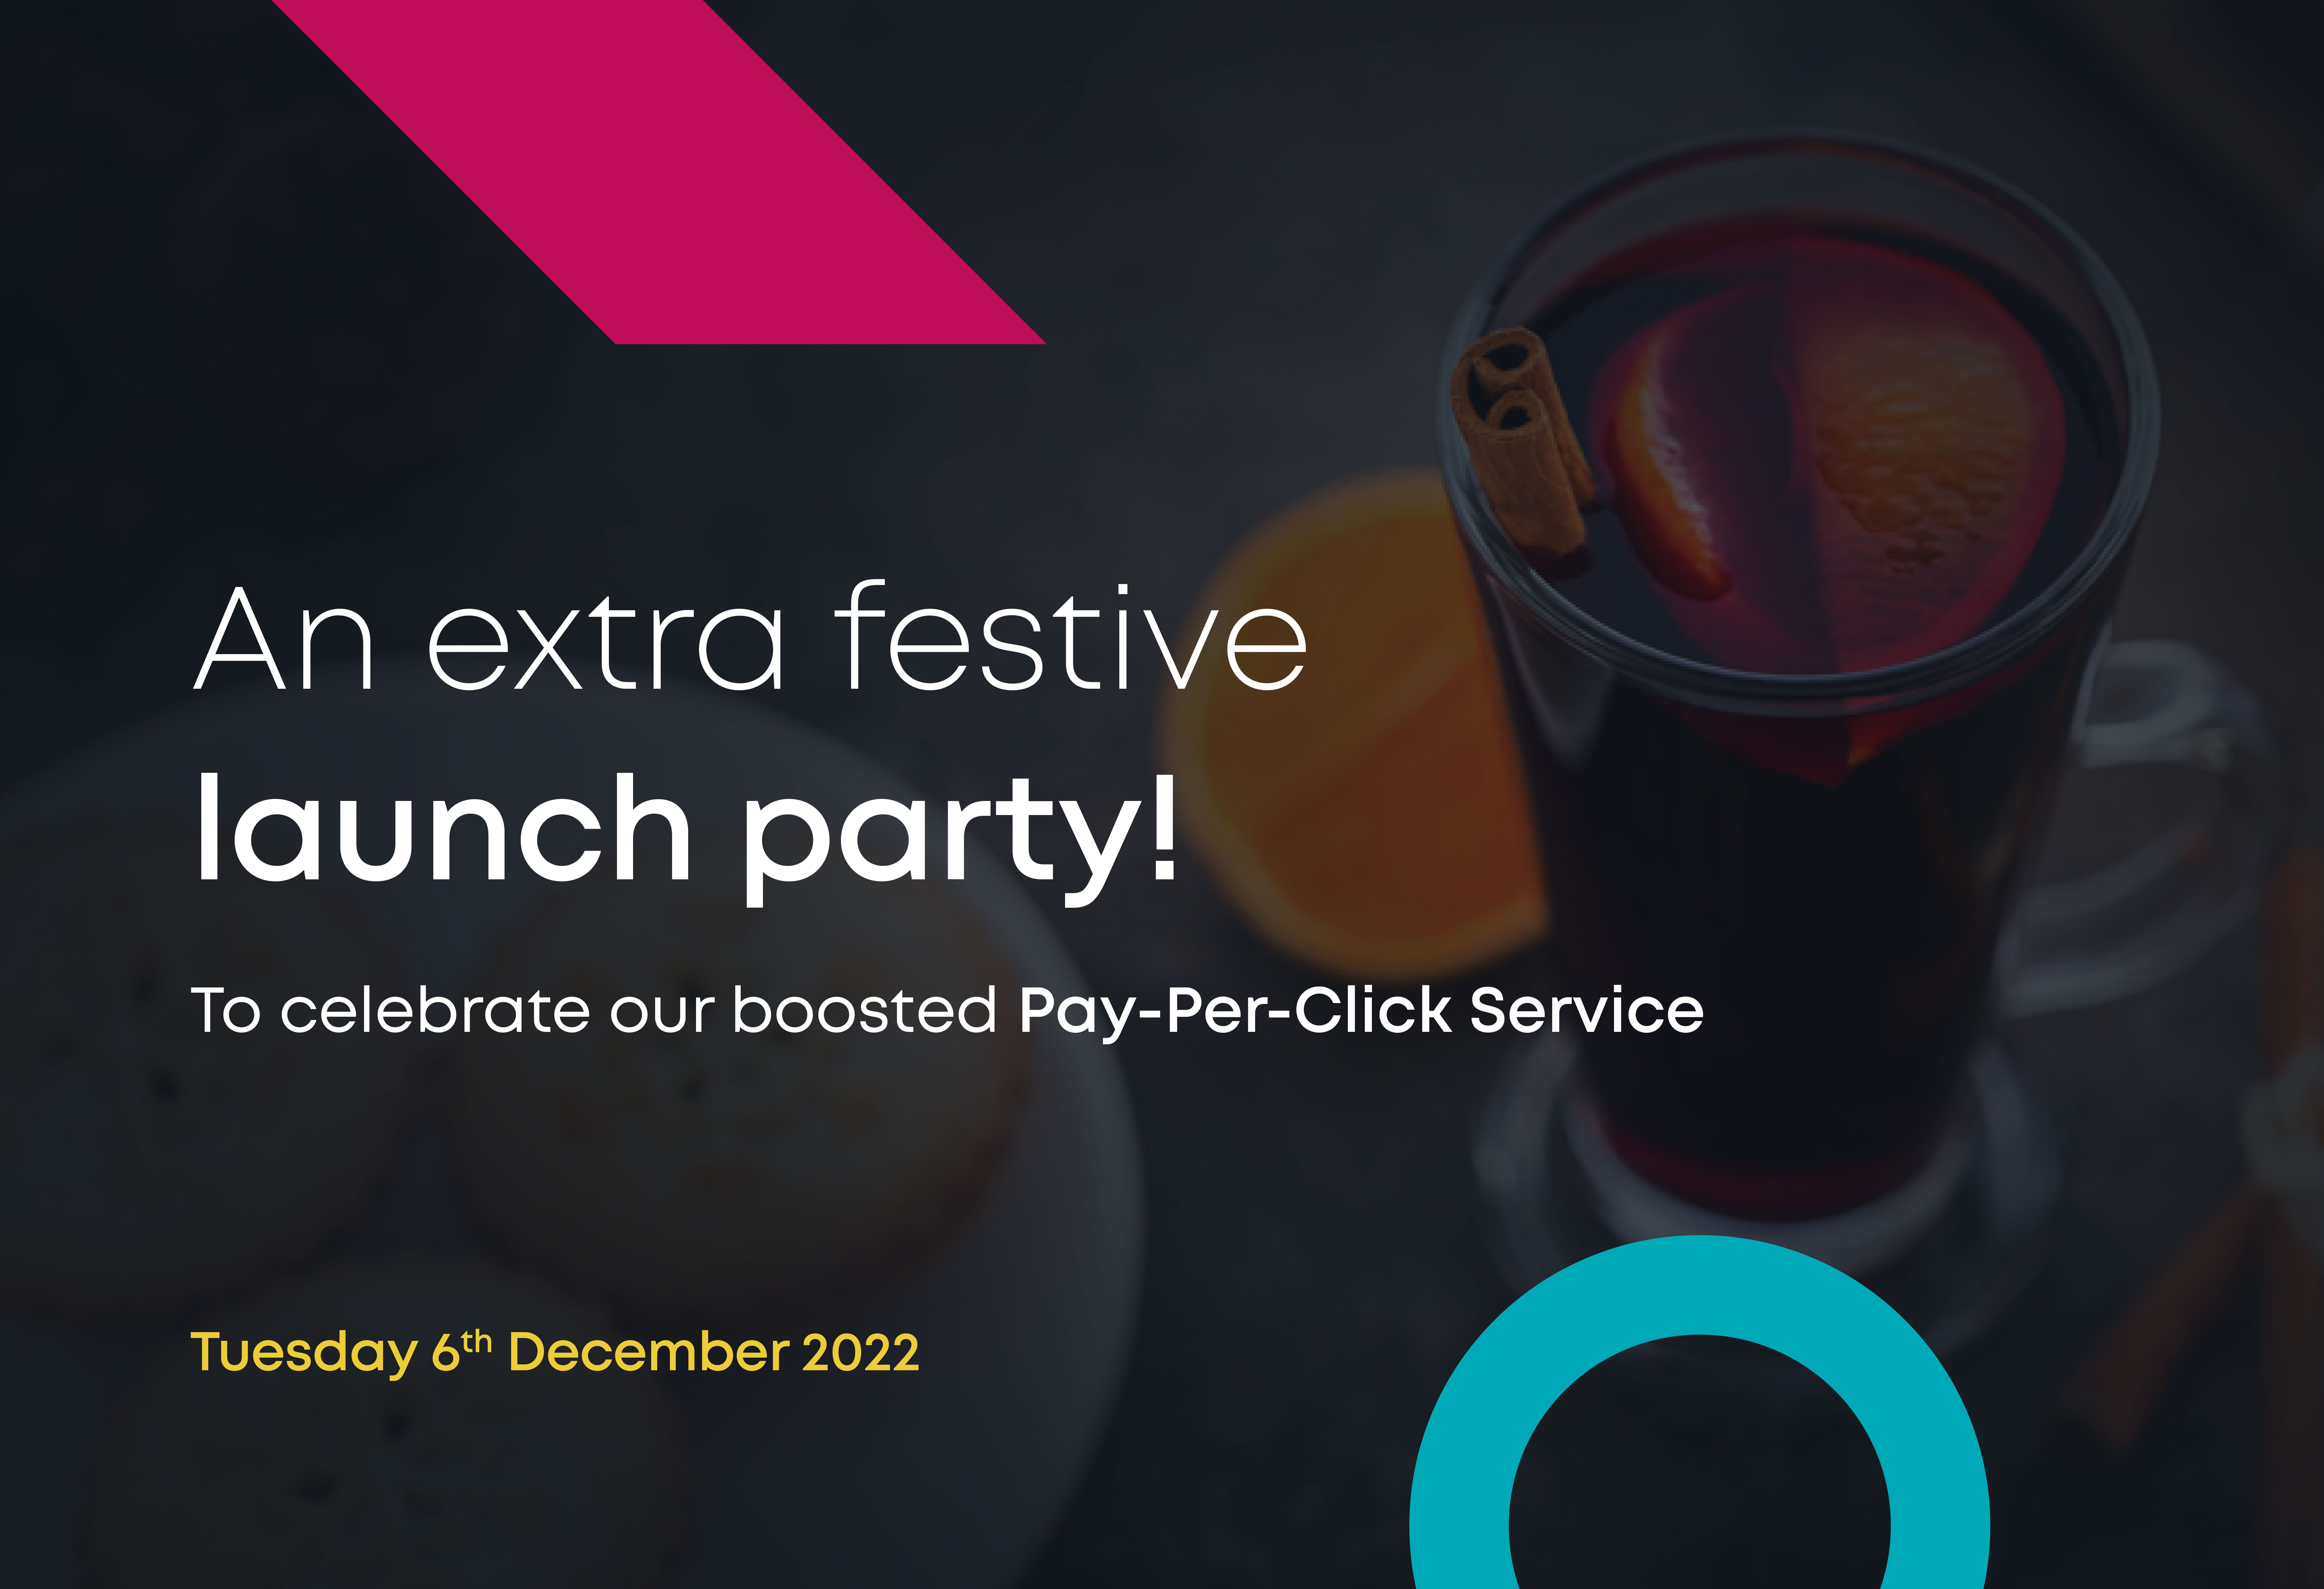 Pay-Per-Click launch event invite